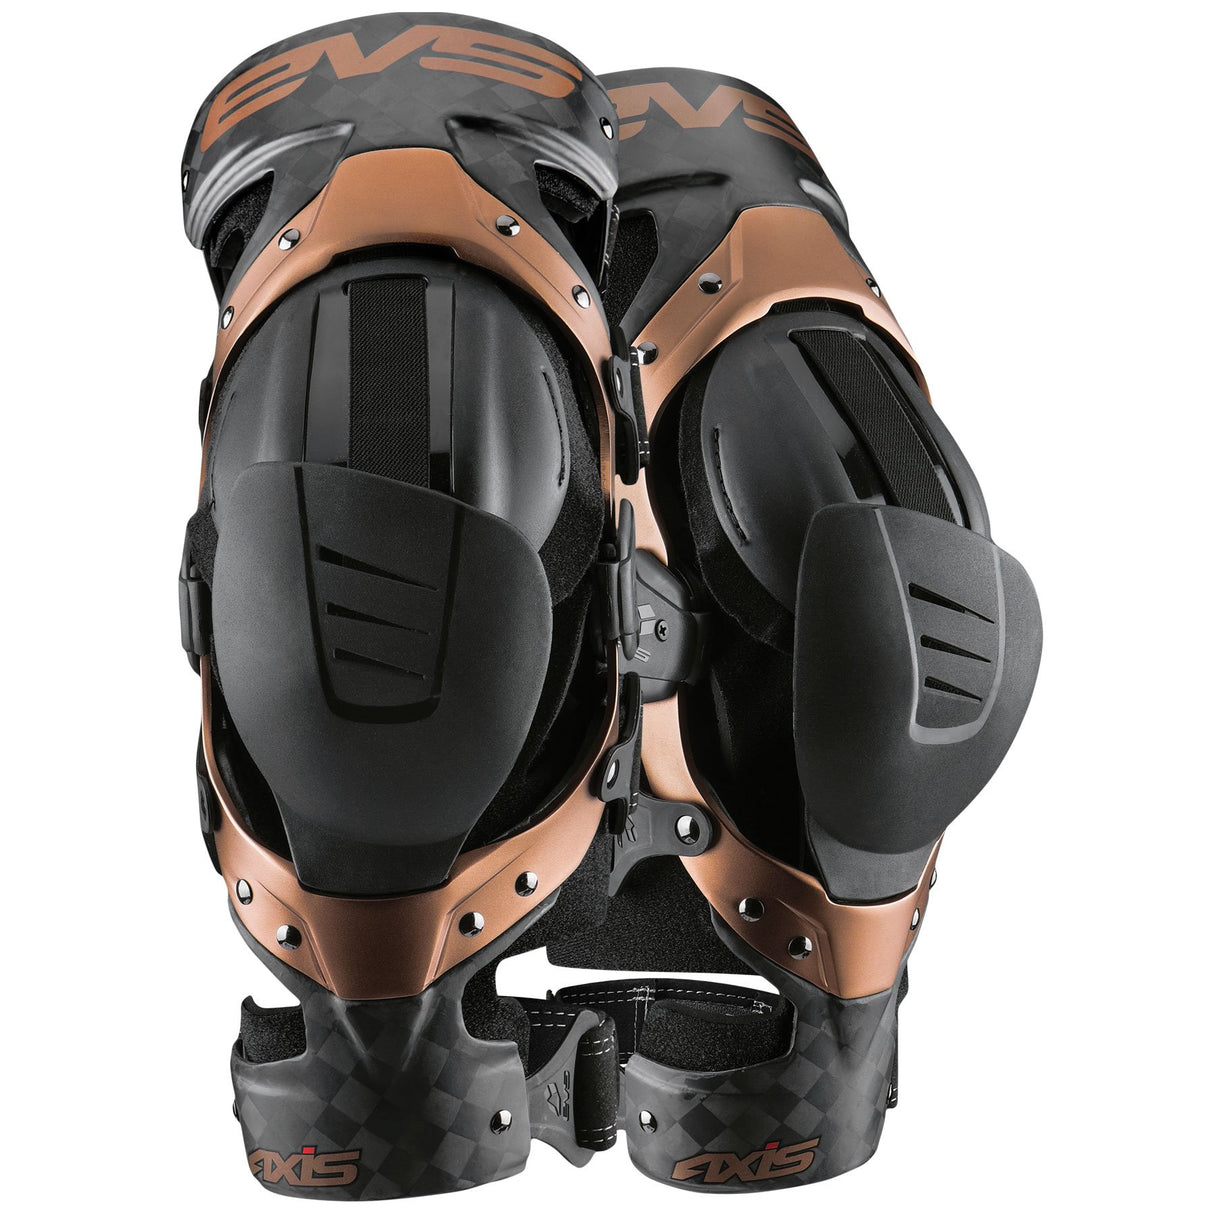 EVS Axis Pro Motocross Dirt Bike Knee Brace Pair - Copper Carbon